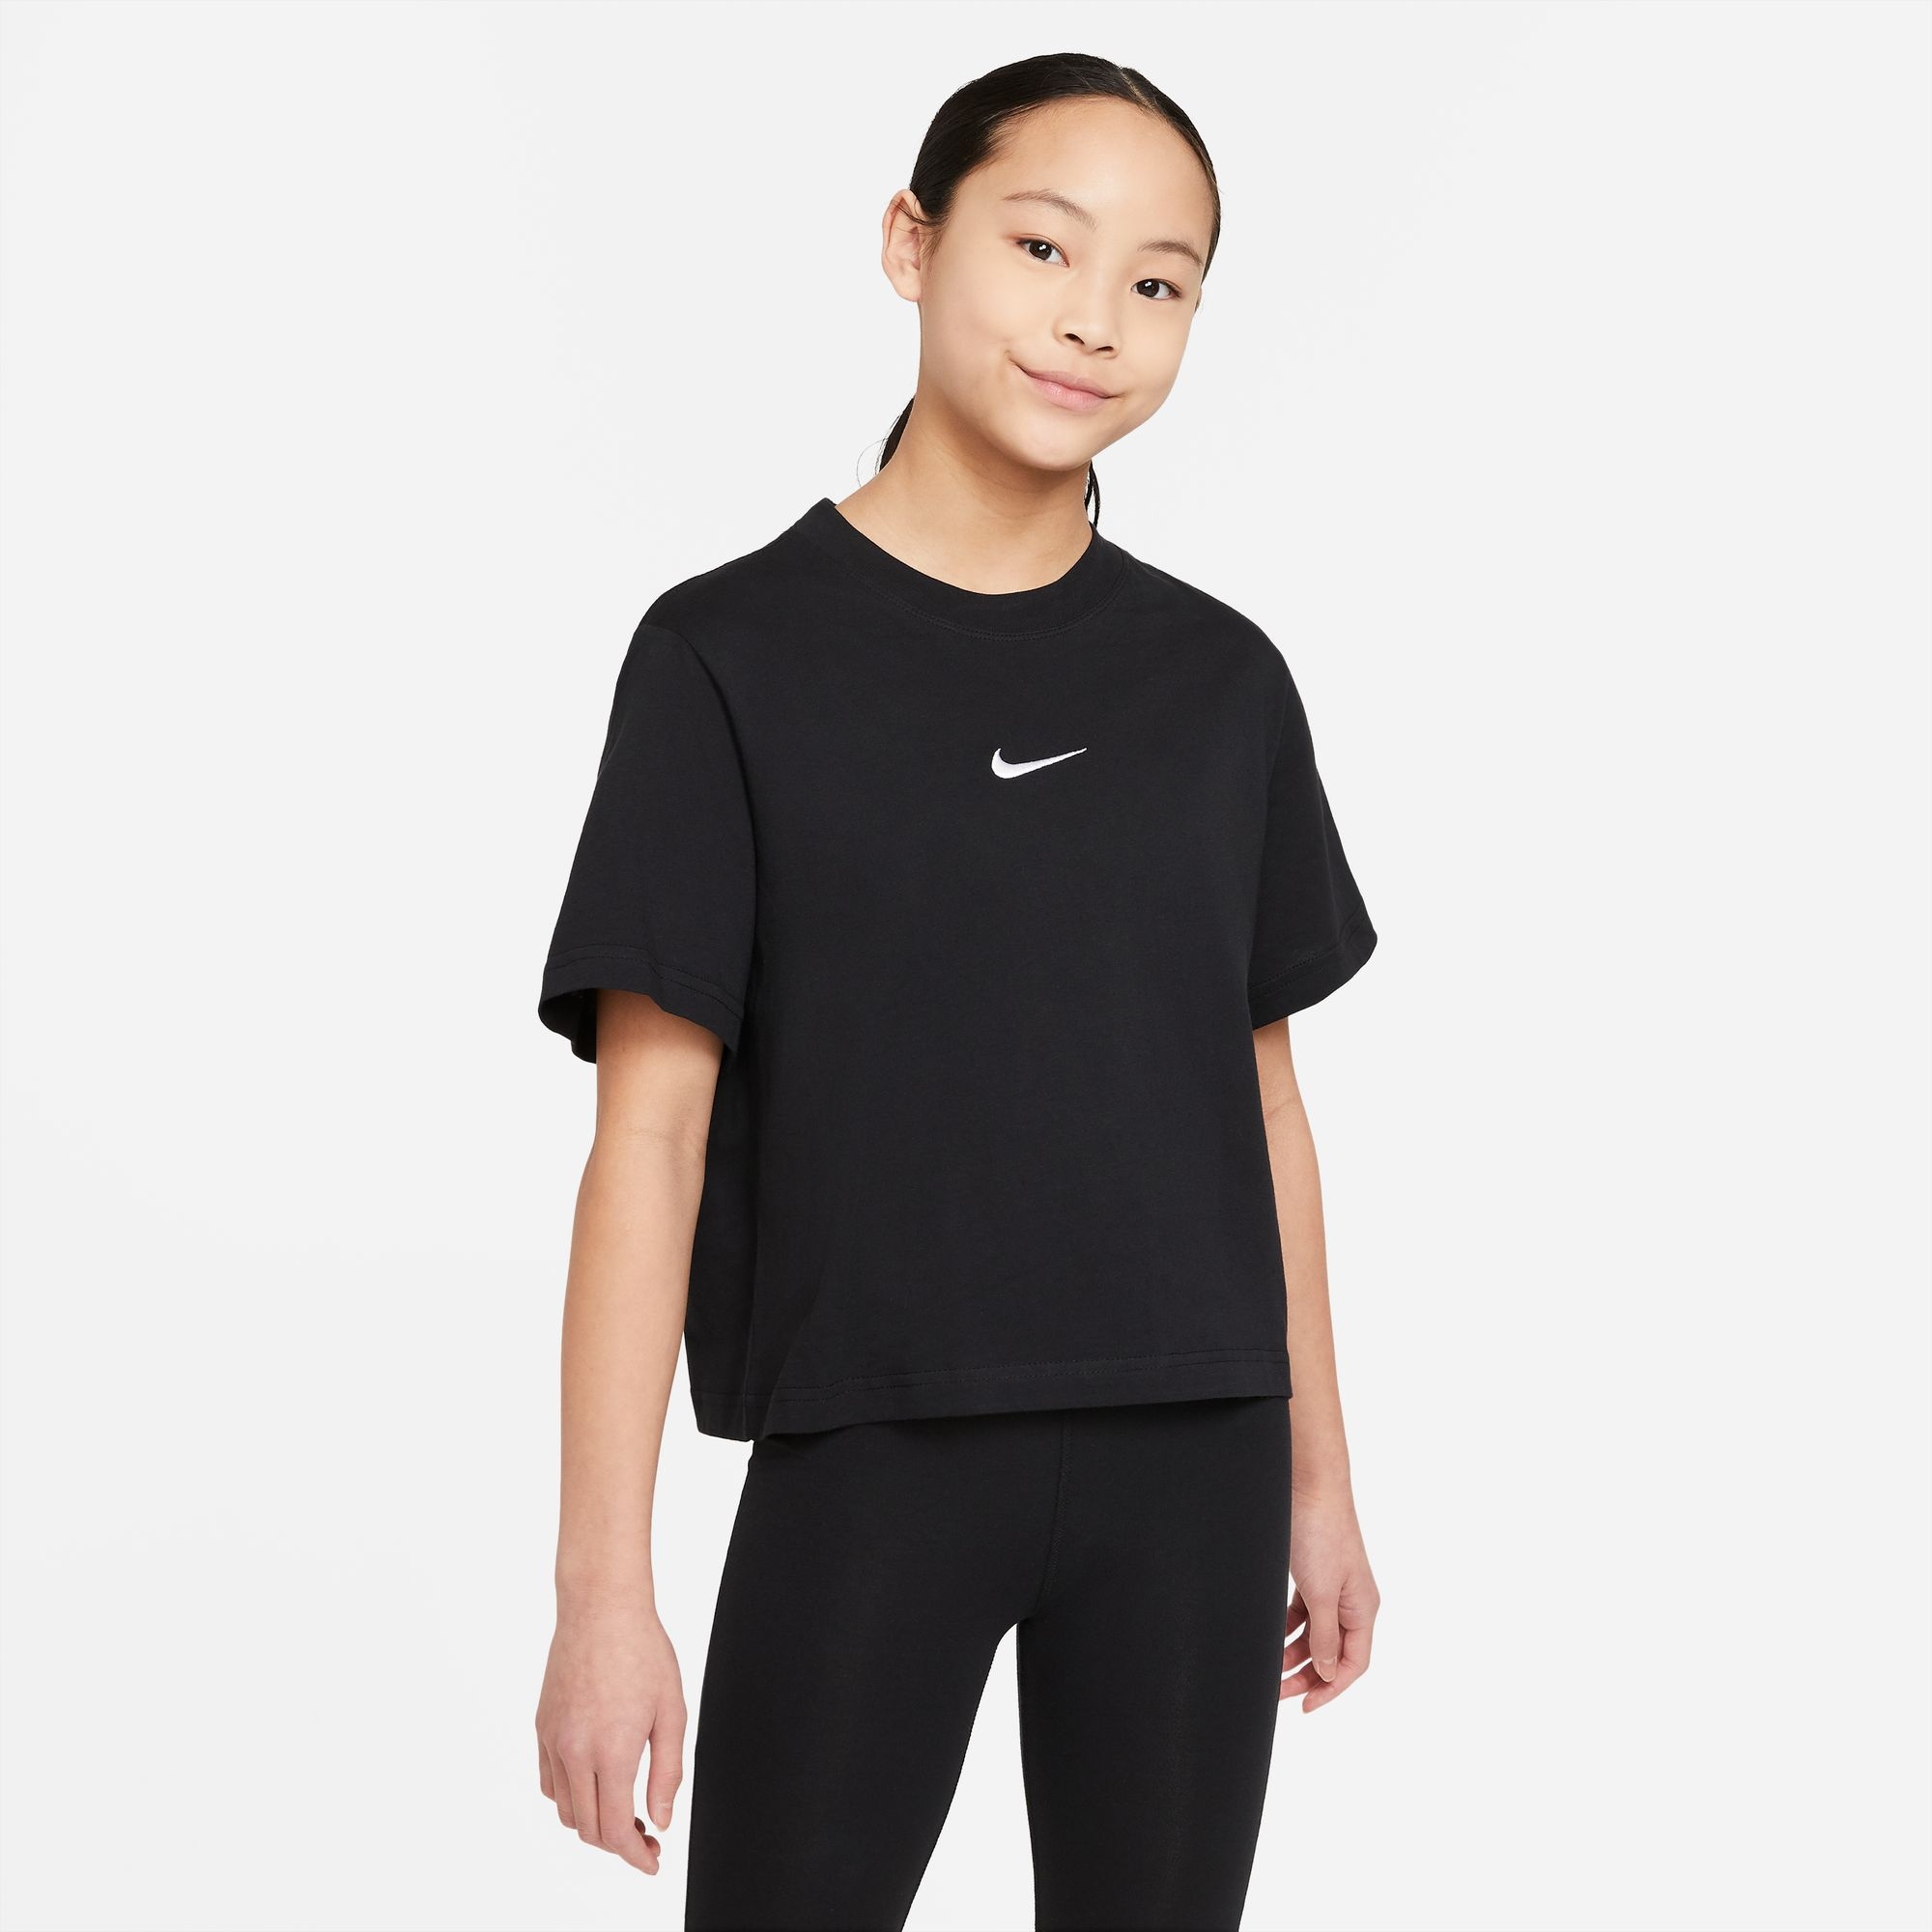 OTTO Kindermode von bei Lässige entdecken Nike online